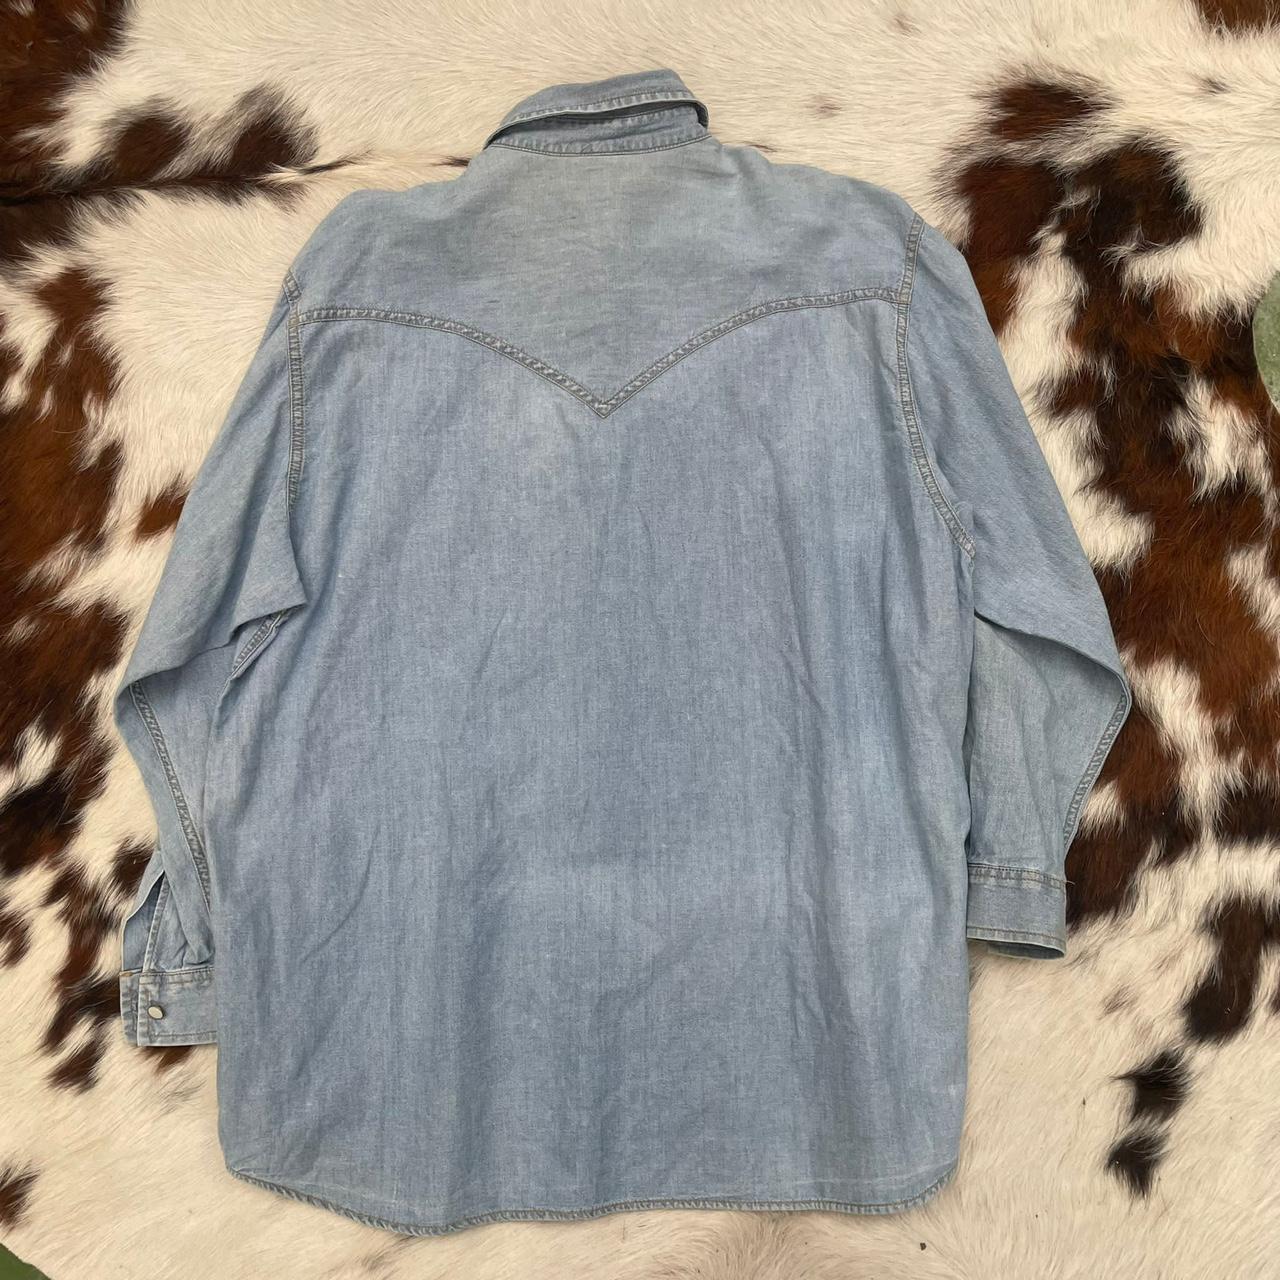 Vintage 1970s 1980s Light Blue/Grey Denim Shirt Top... - Depop